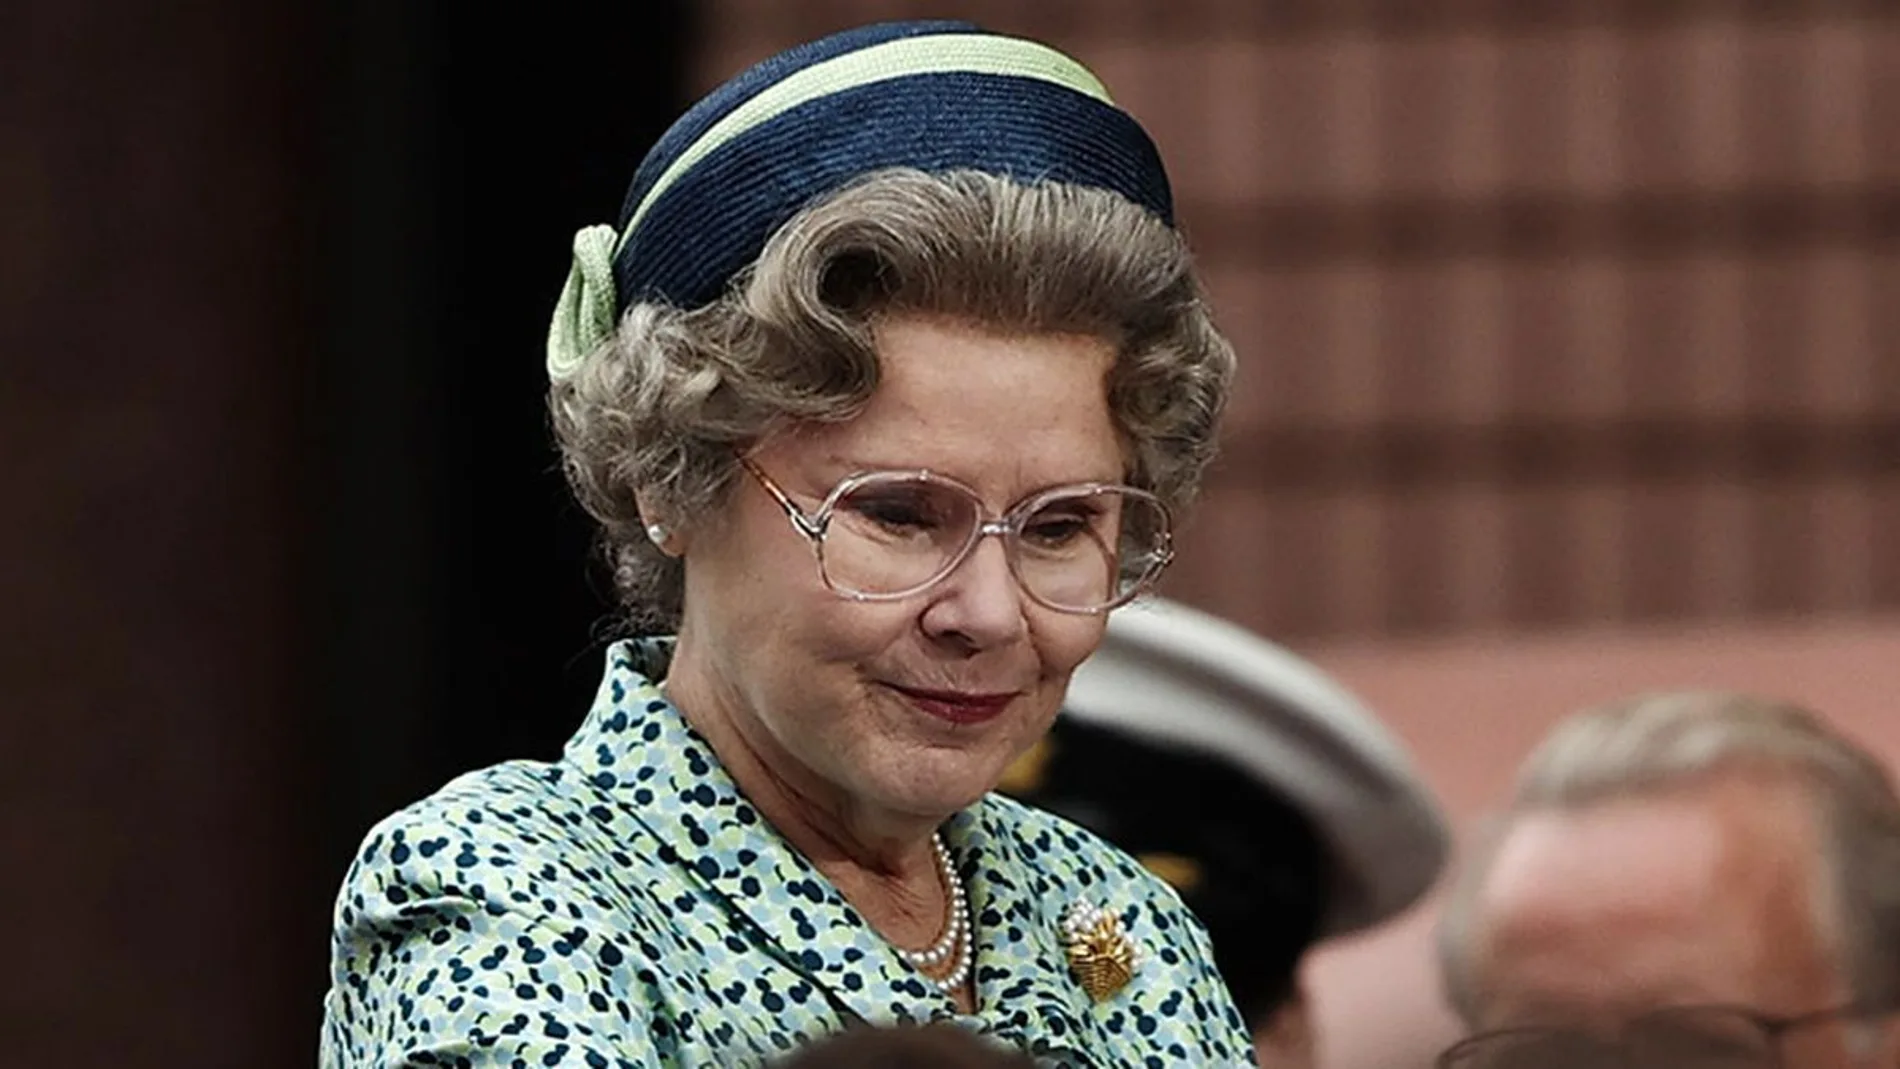 Imelda Staunton caracterizada como la reina Isabel II de Inglaterra para la 5ª temporada de &#39;The Crown&#39;.